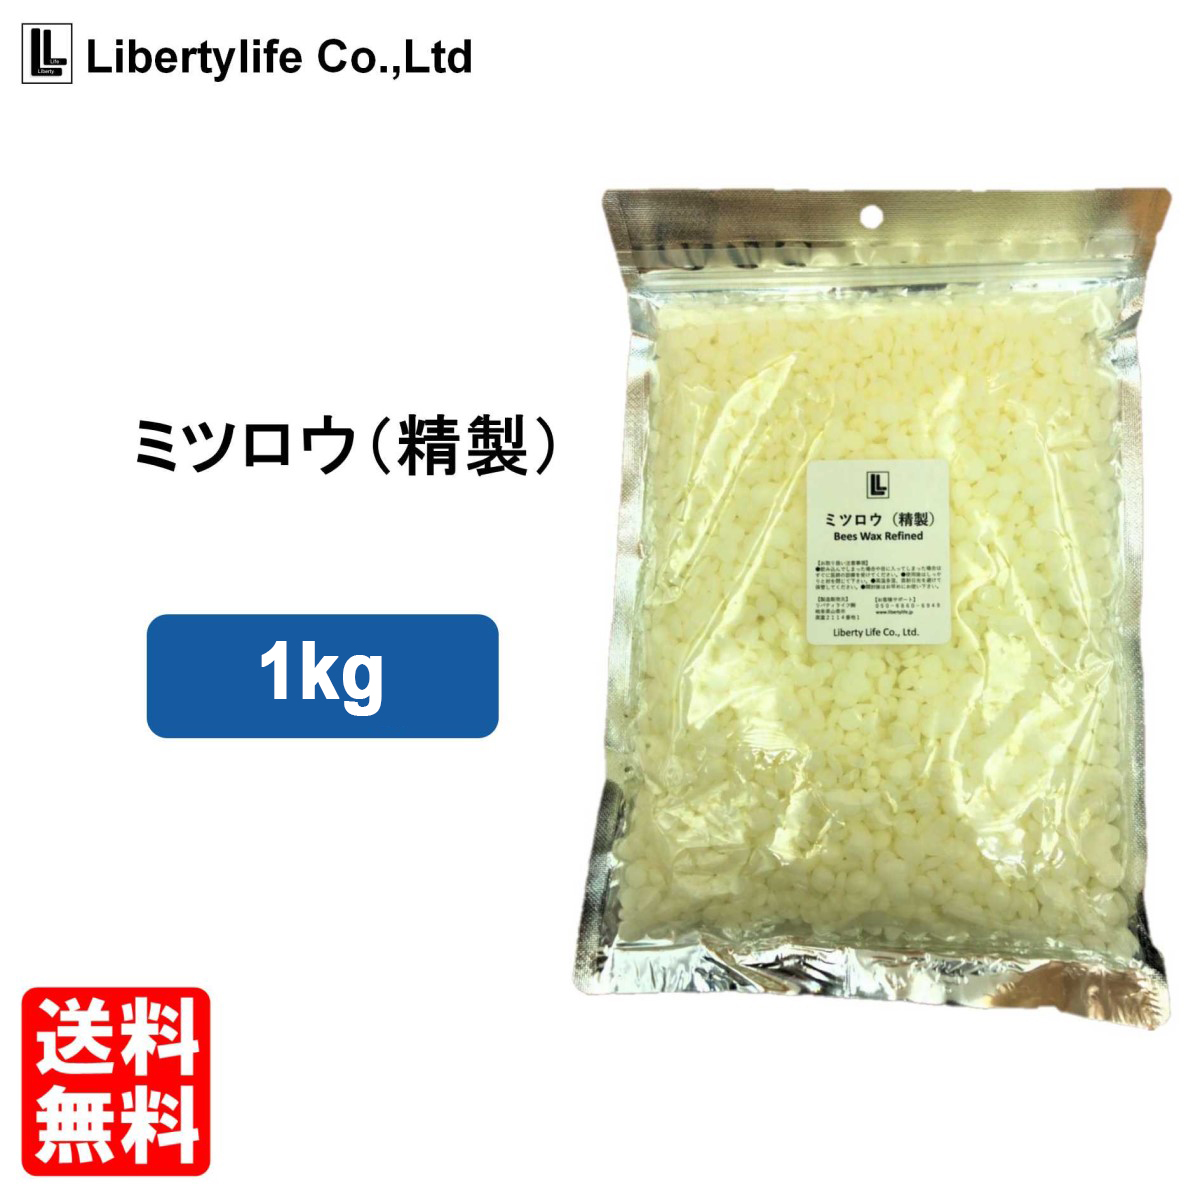 使い勝手の良いリバティライフ 蜜蝋 精製 ミツロウ ビーズワックス(1kg)